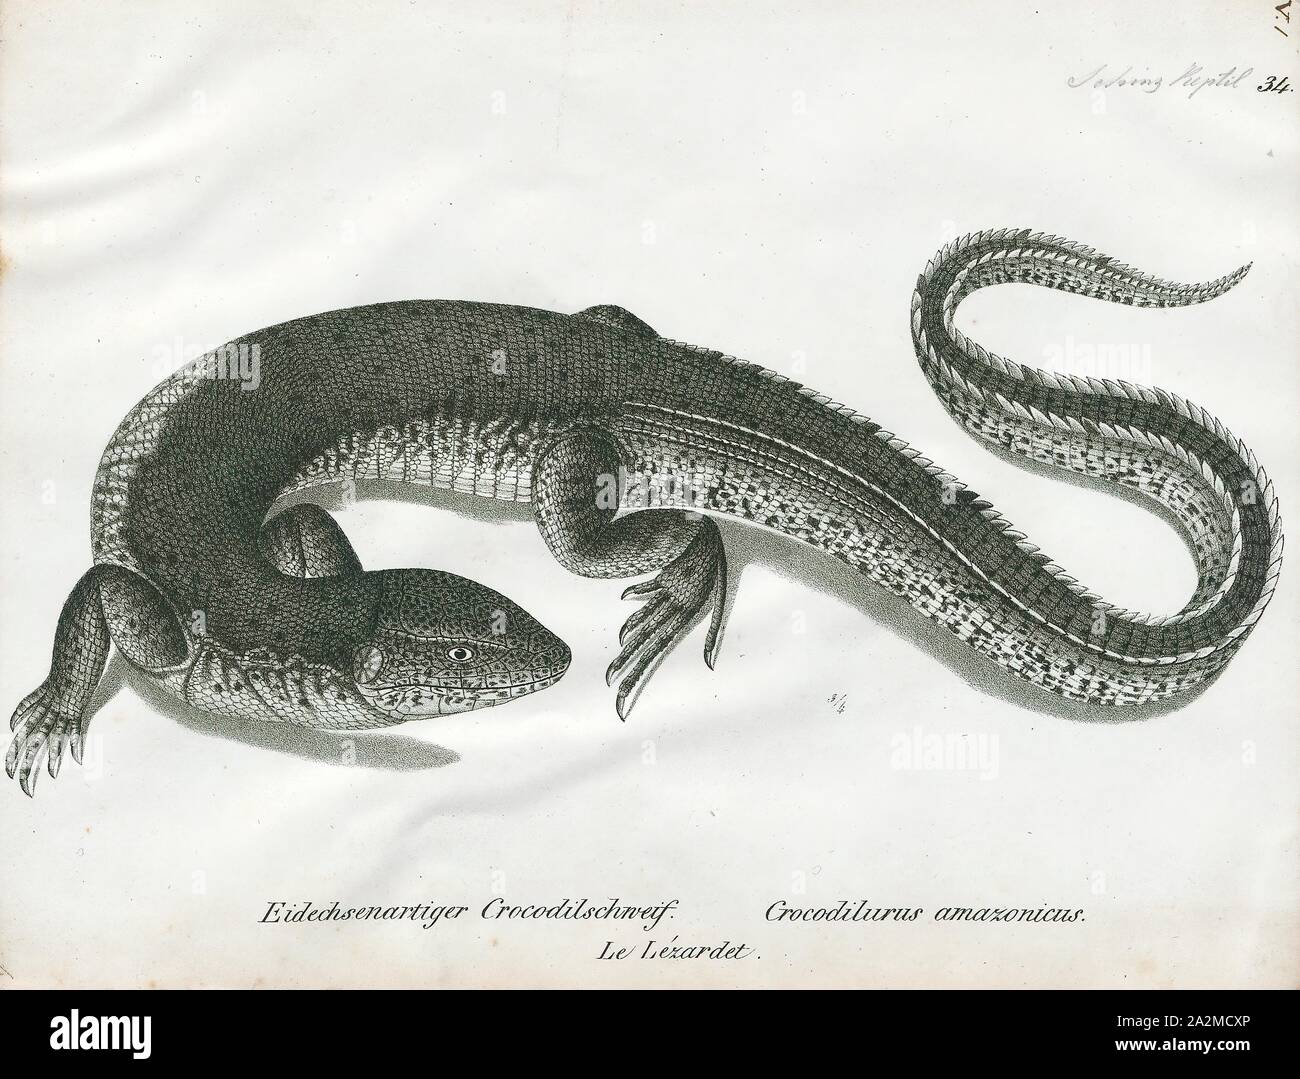 Crocodilurus Crocodilurus amazonicus, Drucken, ist eine Echse, die Gattung gehört zur Familie Teiidae. Es ist Monotypische, mit nur einem einzigen beschriebenen Arten Crocodilurus amazonicus, das Krokodil tegu. Diese semiaquatic Eidechse hat eine abgeflachte, Paddeln - wie Schwanz und ist im Amazonasbecken und Guyana Schild in Südamerika gefunden. Er ernährt sich von Arthropoden, Amphibien, Reptilien und Fische., 1700-1880 Stockfoto